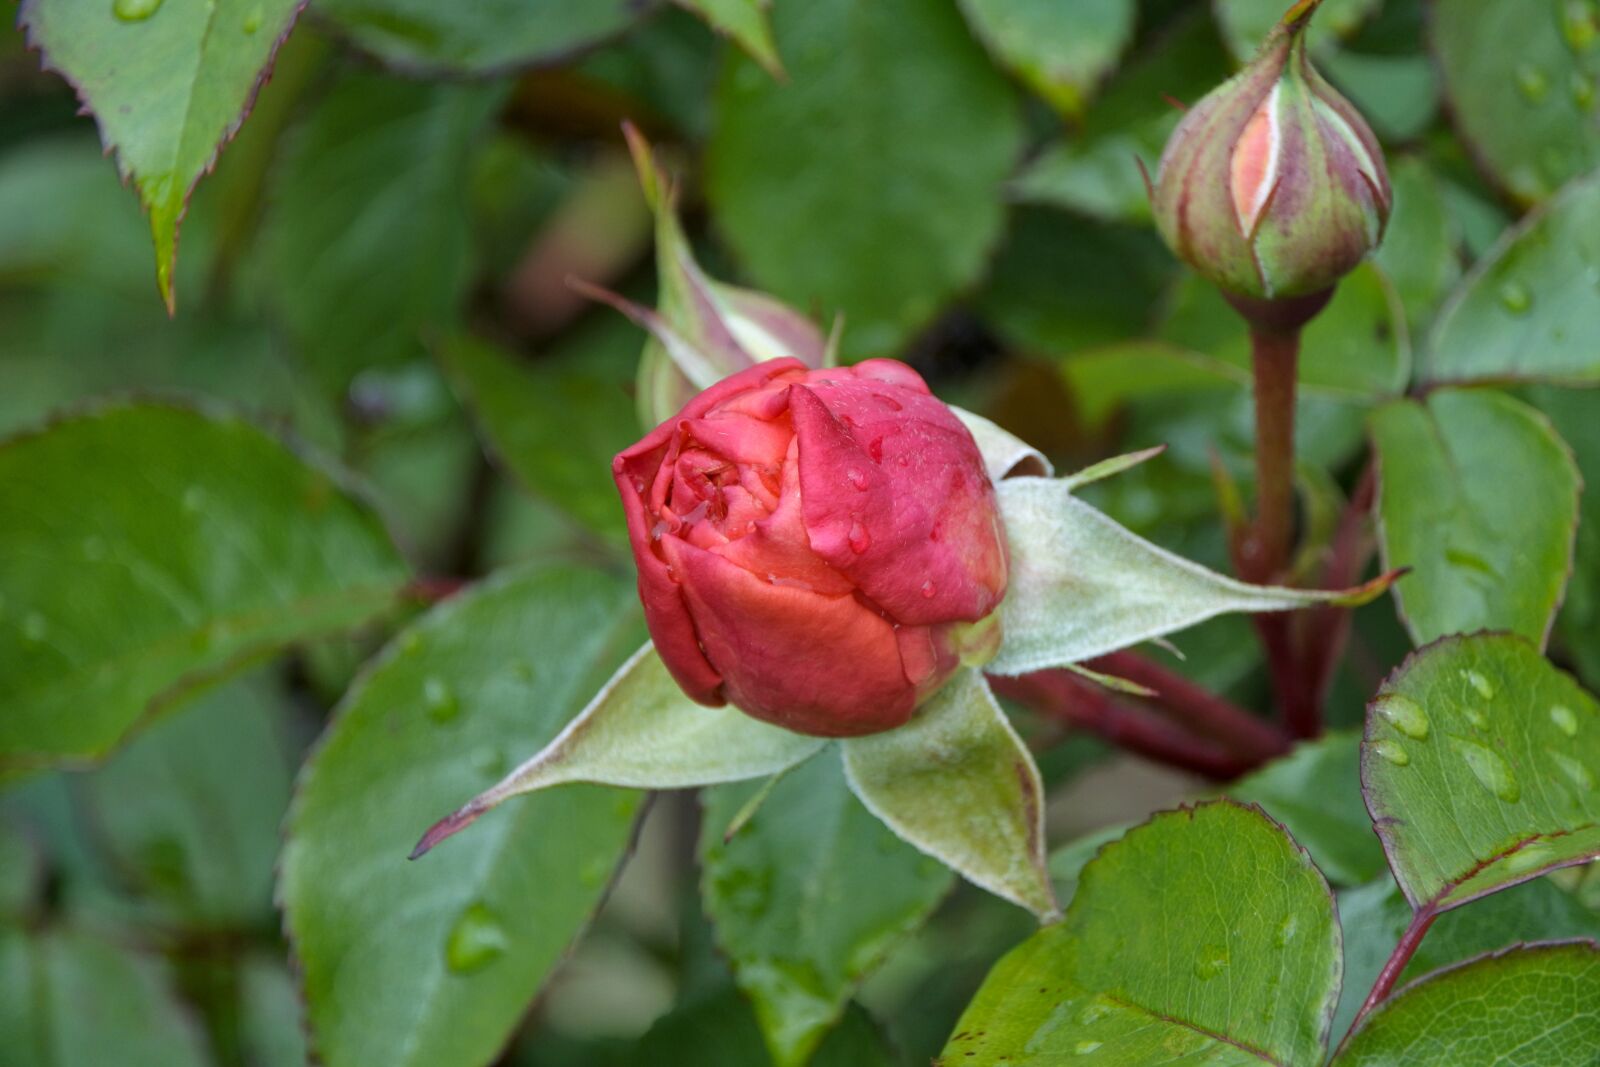 1 NIKKOR VR 10-100mm f/4-5.6 sample photo. Rosebud, garden, flower photography